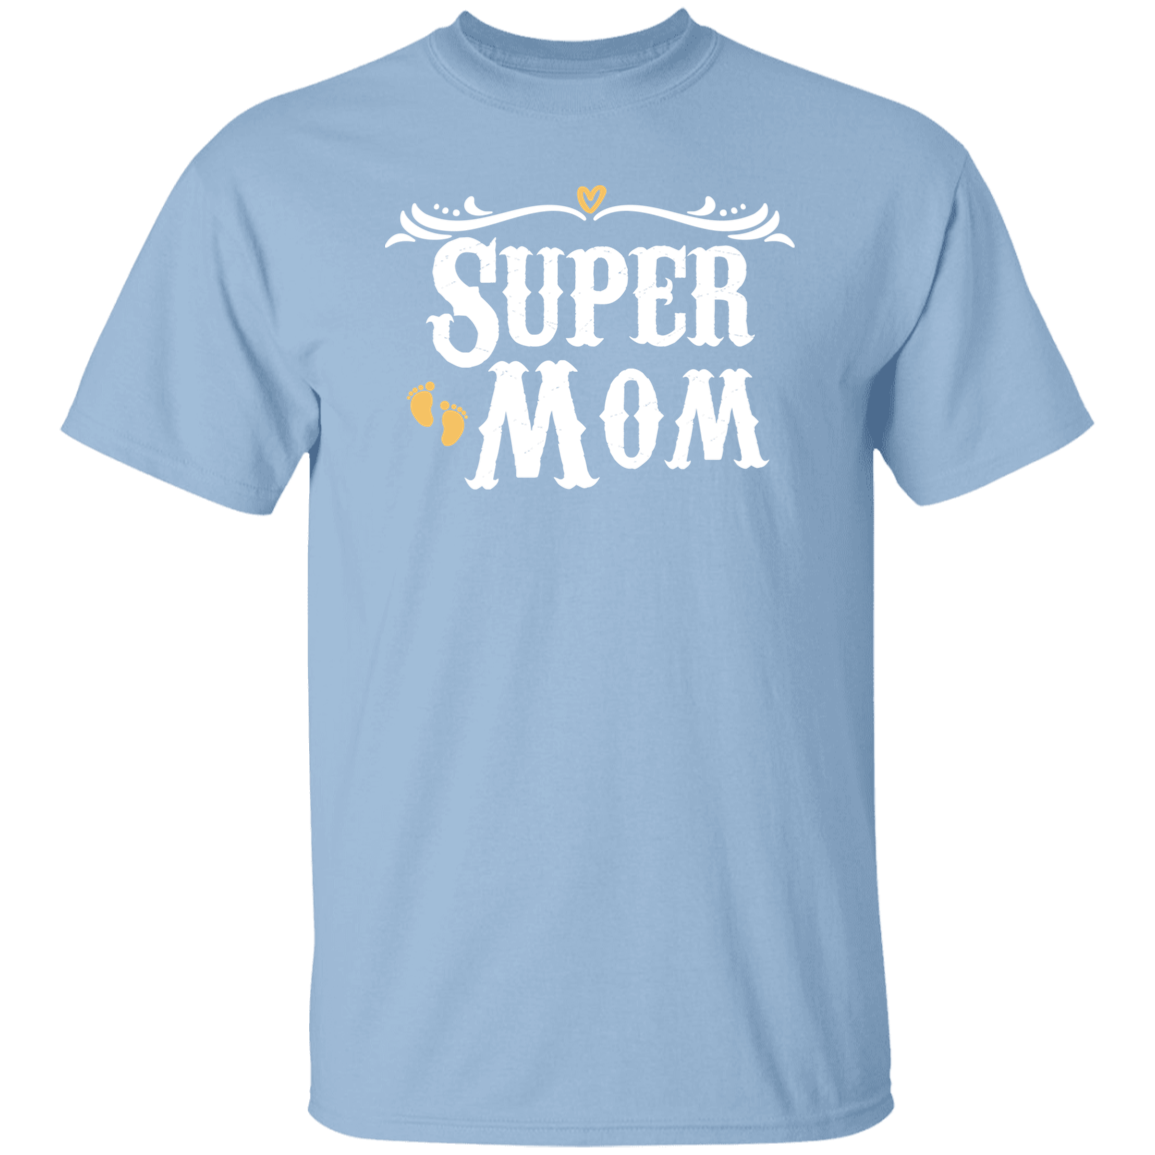 Super Mom 5.3 oz. T-Shirt